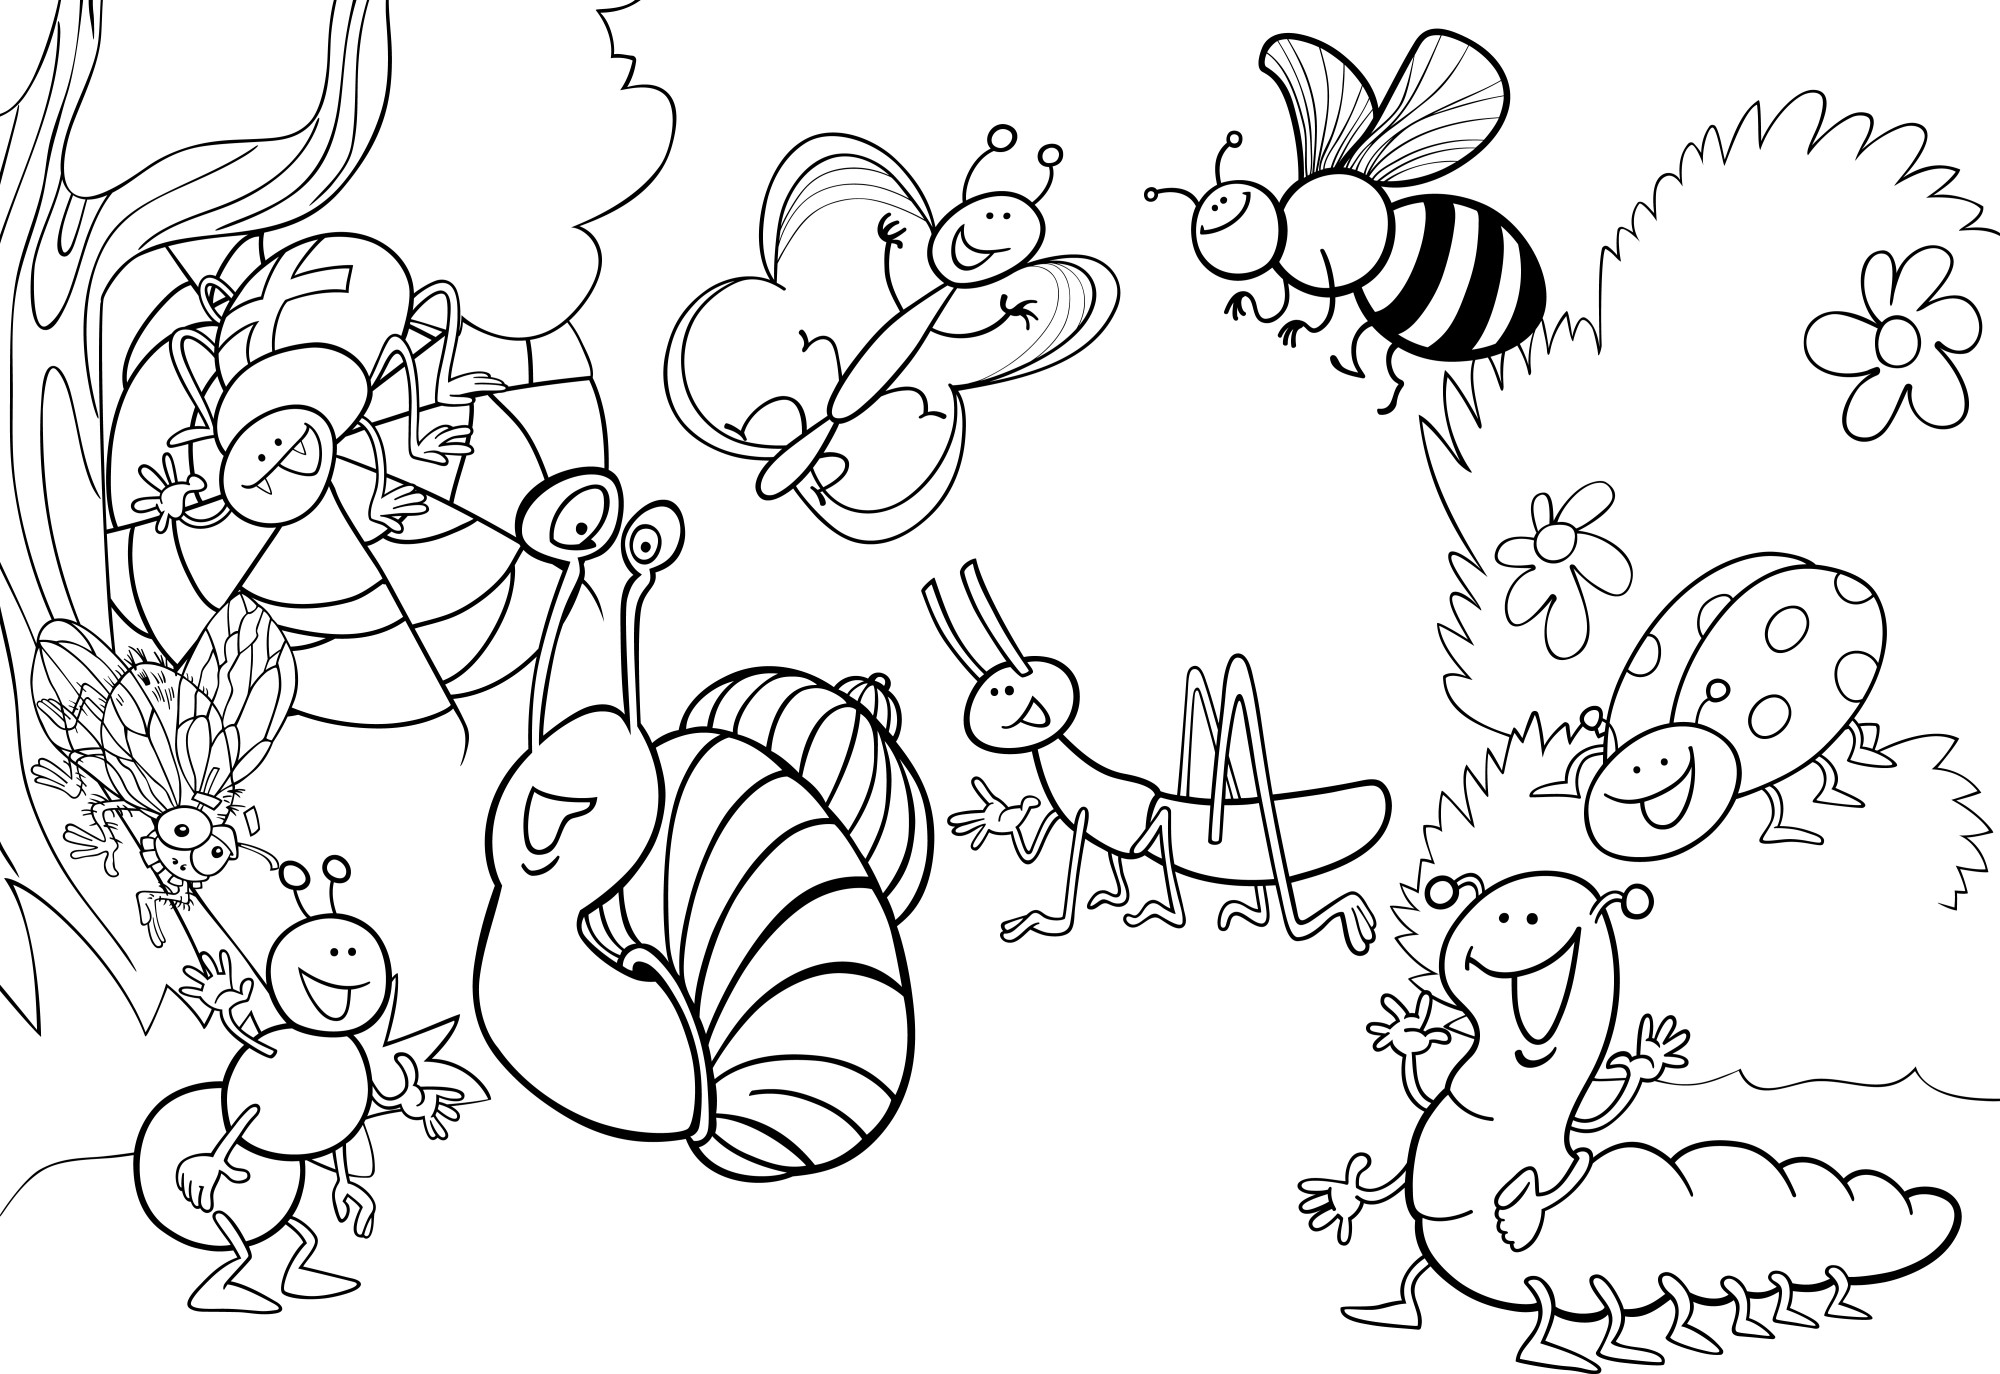 Раскраска для детей: насекомые и божья коровка играют в саду